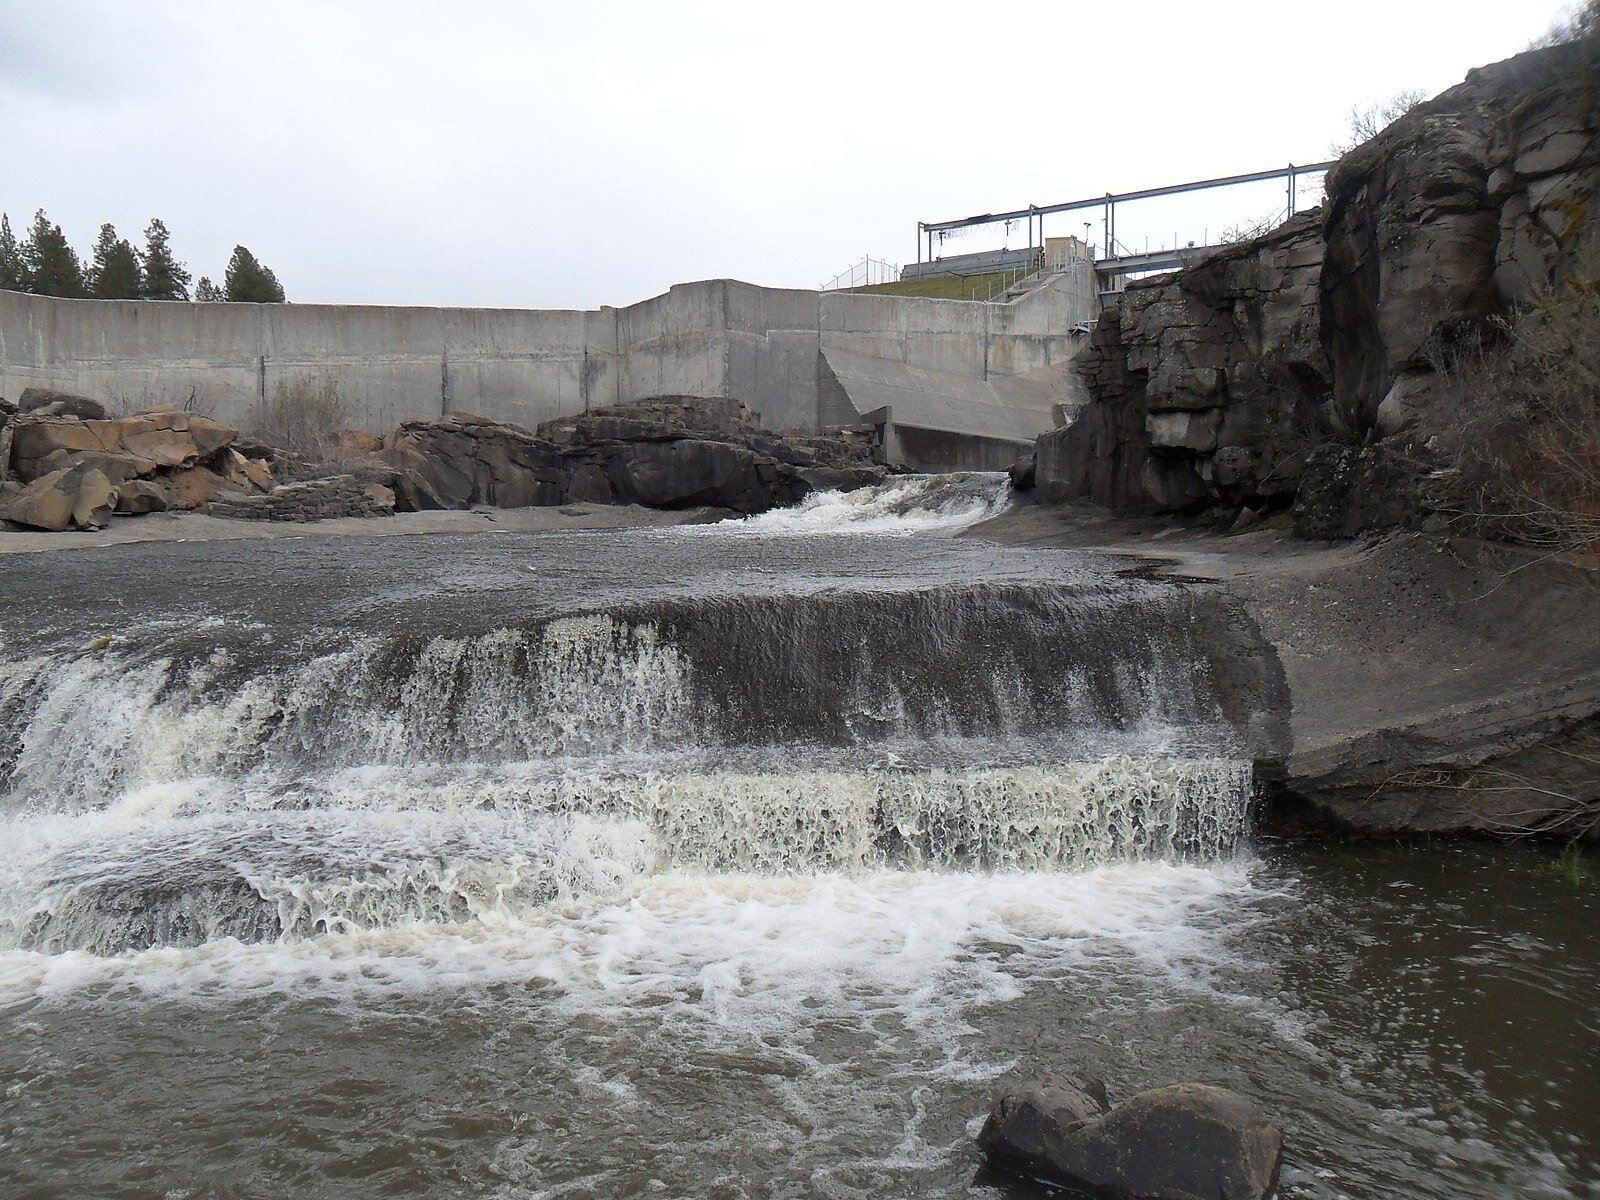 In ‘momentous’ act, regulators approve demolition of four Klamath River dams